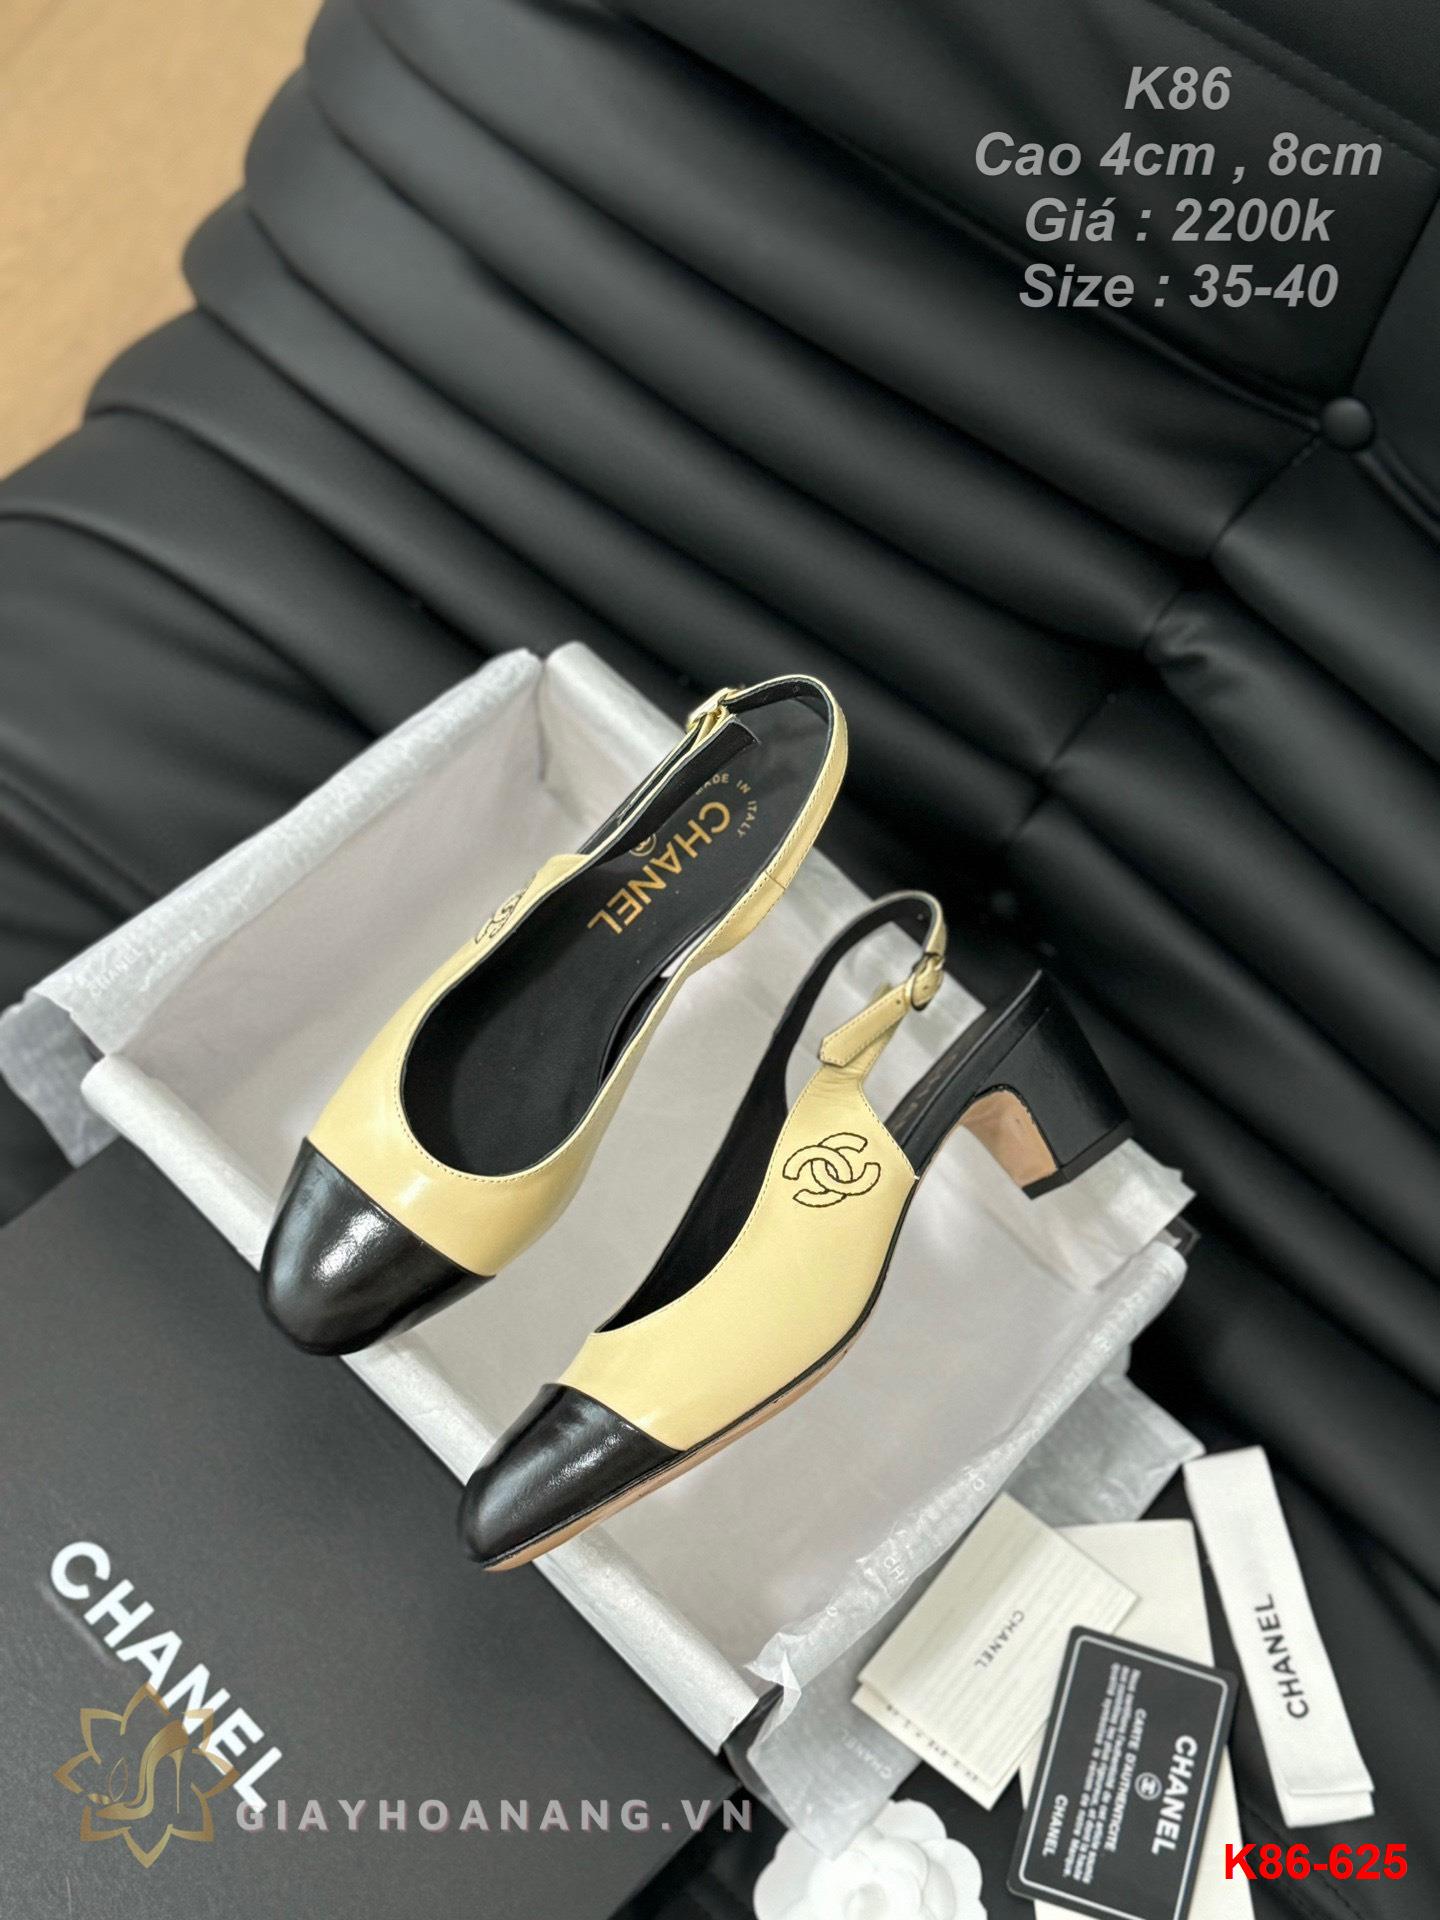 K86-625 Chanel sandal cao gót 4cm , 8cm siêu cấp